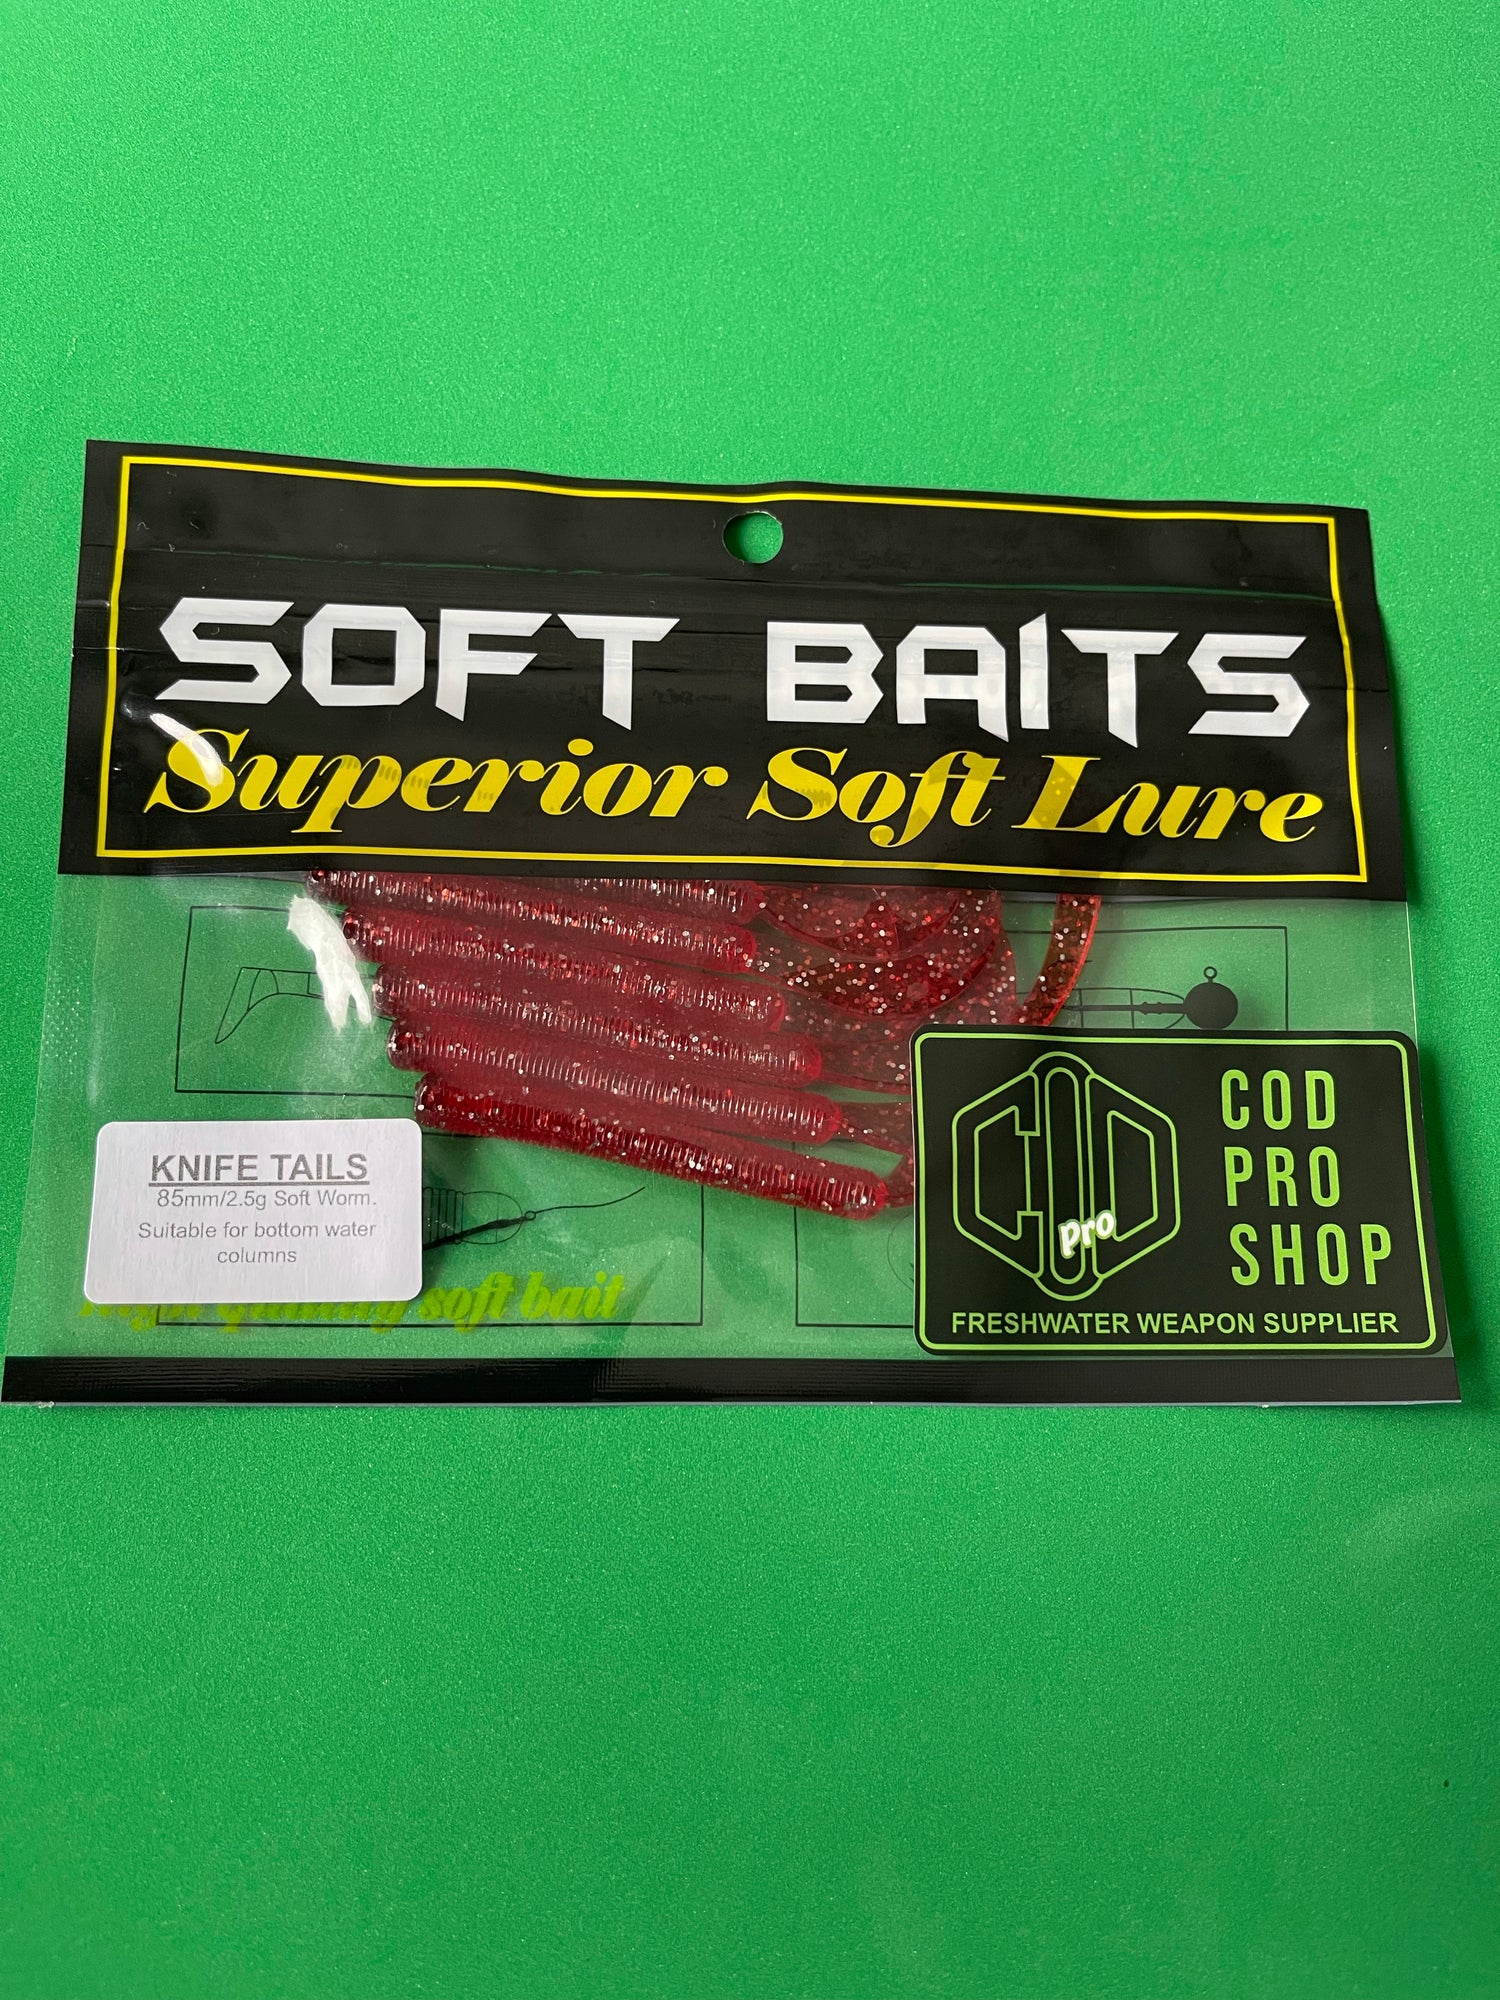 Knife Tail Soft plastics 85mm